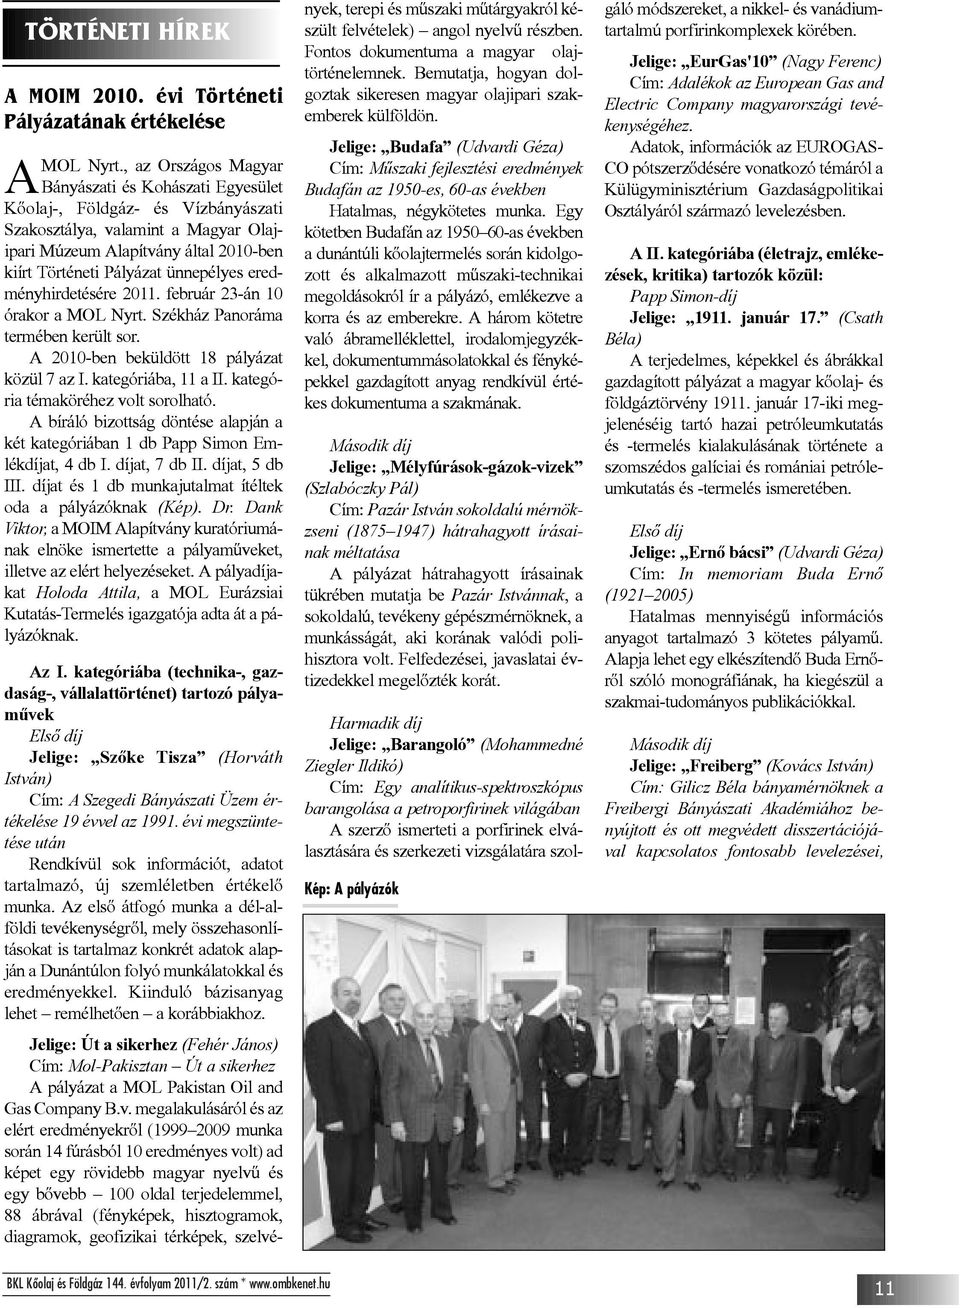 ünnepélyes eredményhirdetésére 2011. február 23-án 10 órakor a MOL Nyrt. Székház Panoráma termében került sor. A 2010-ben beküldött 18 pályázat közül 7 az I. kategóriába, 11 a II.